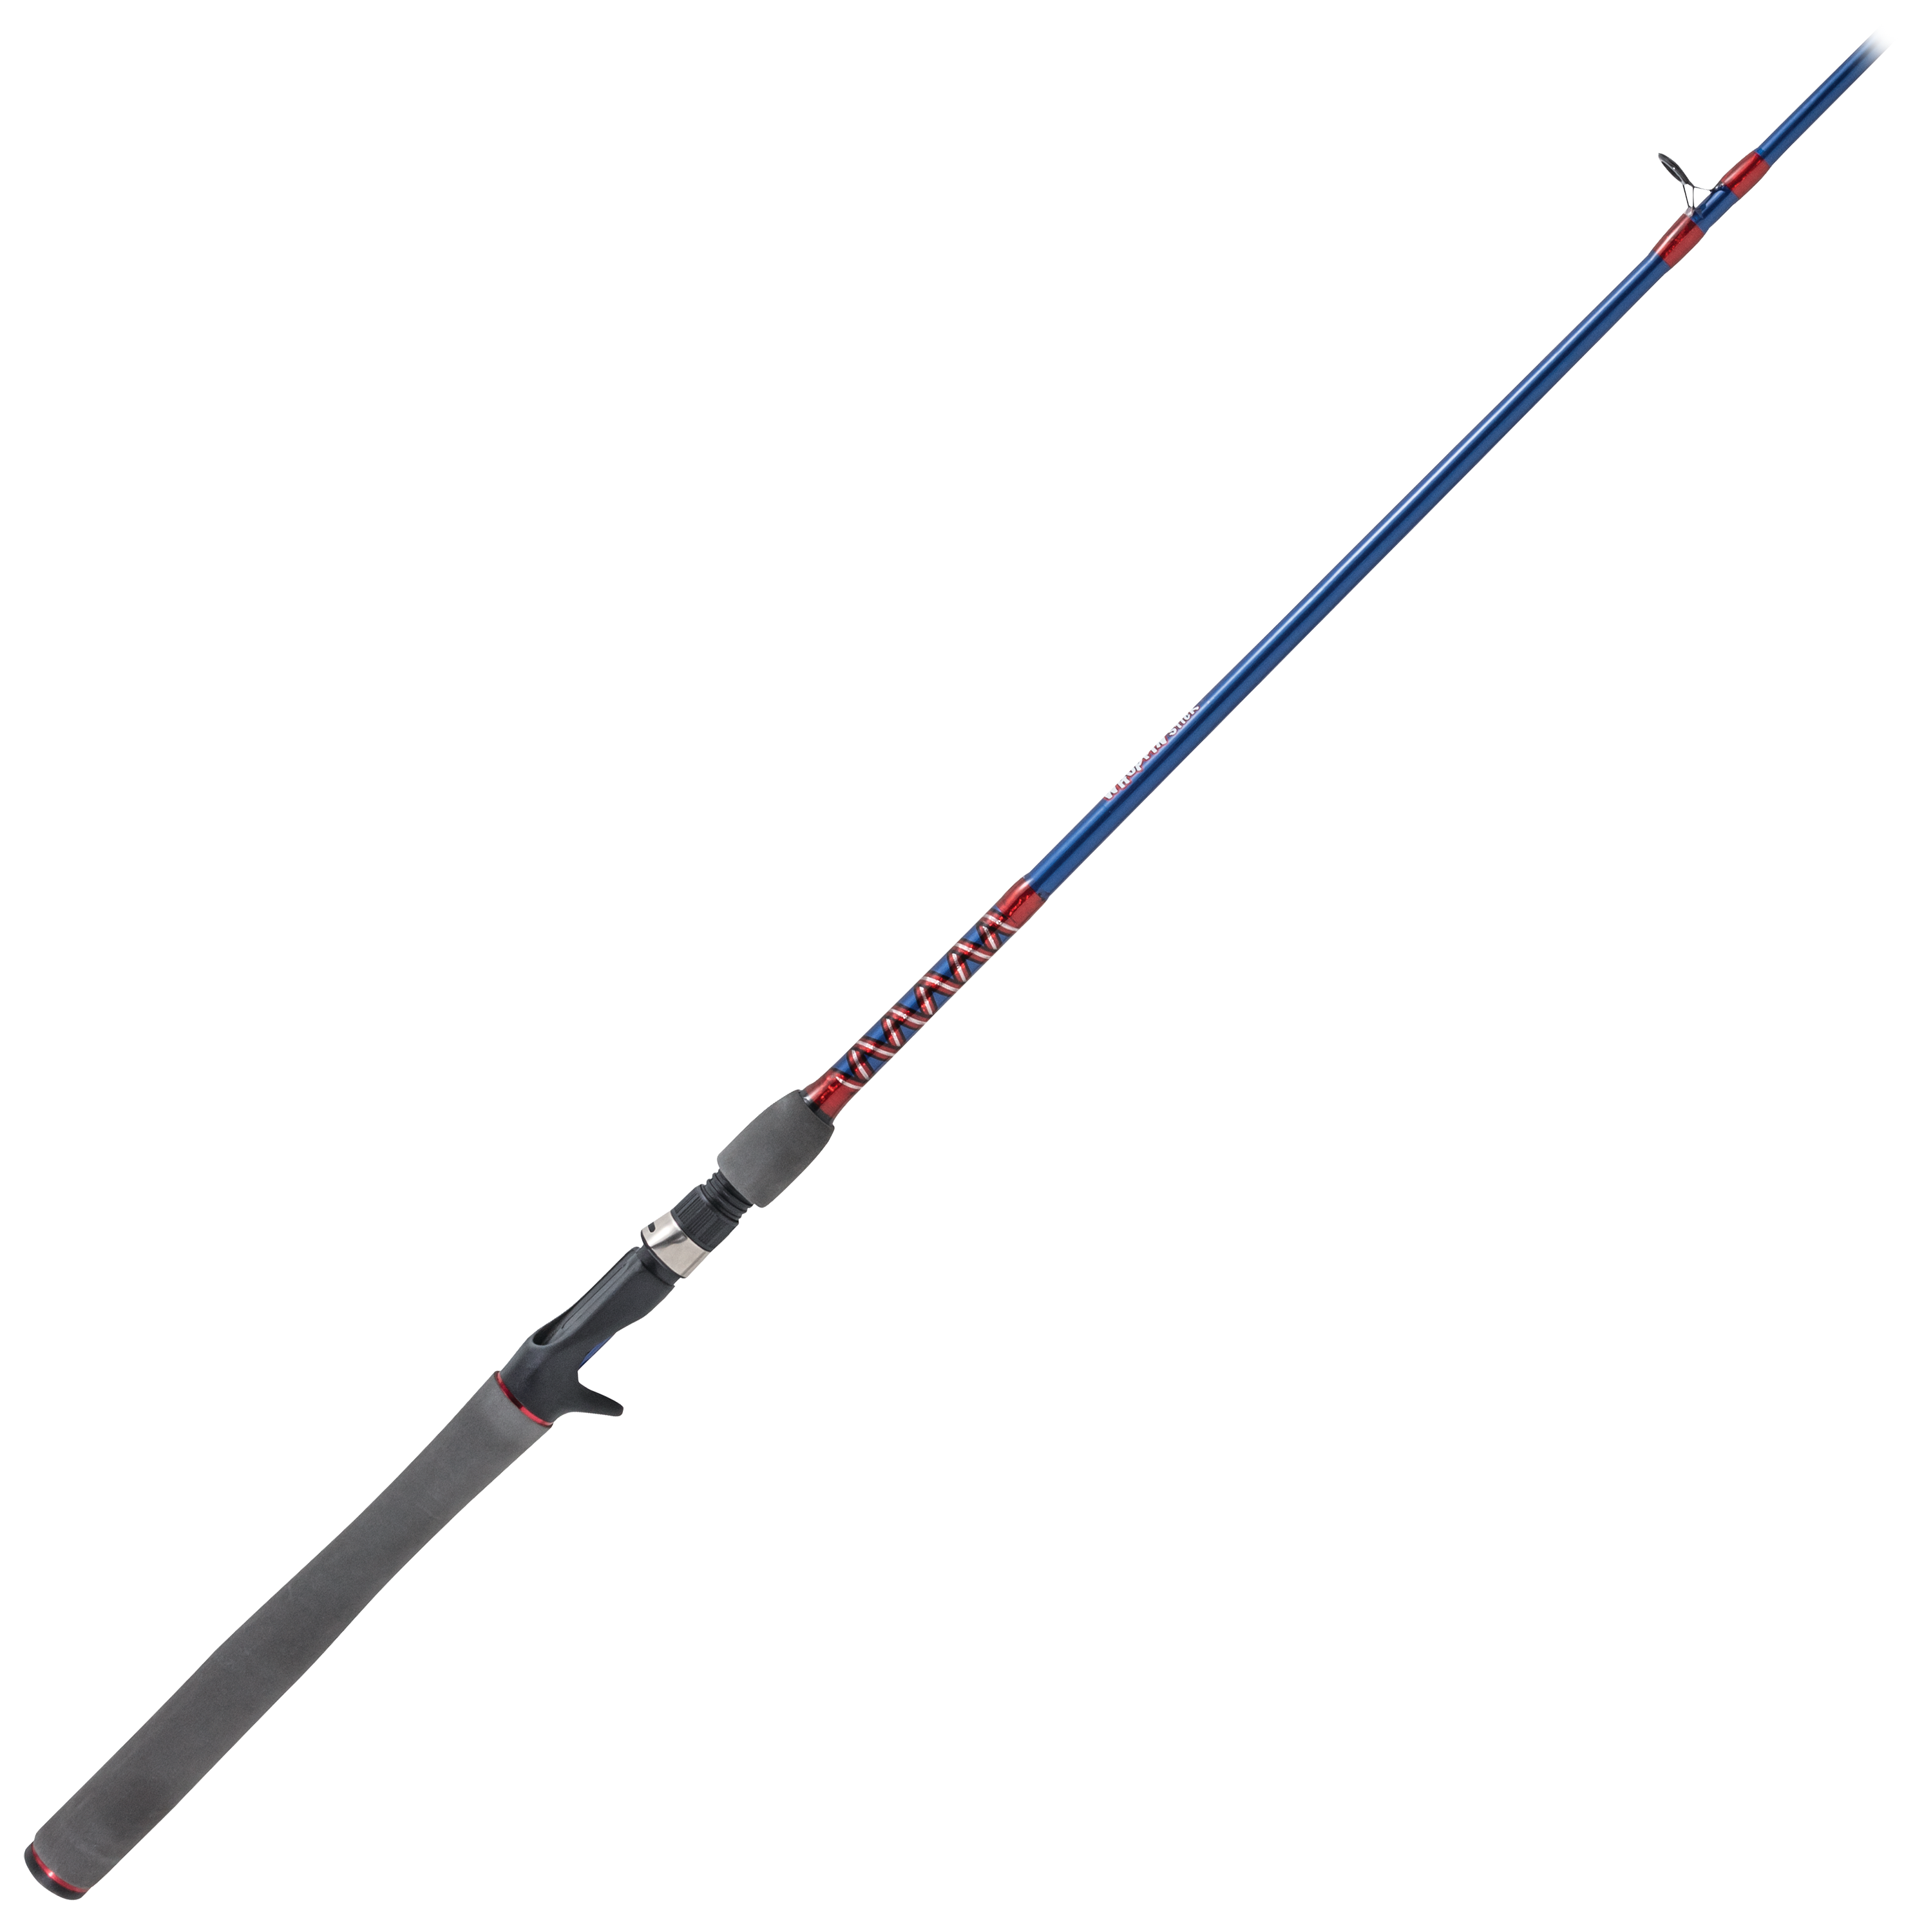 Berkley Lightning Rod BSLR701M Medium Spinning Rod, 7 ft OAL